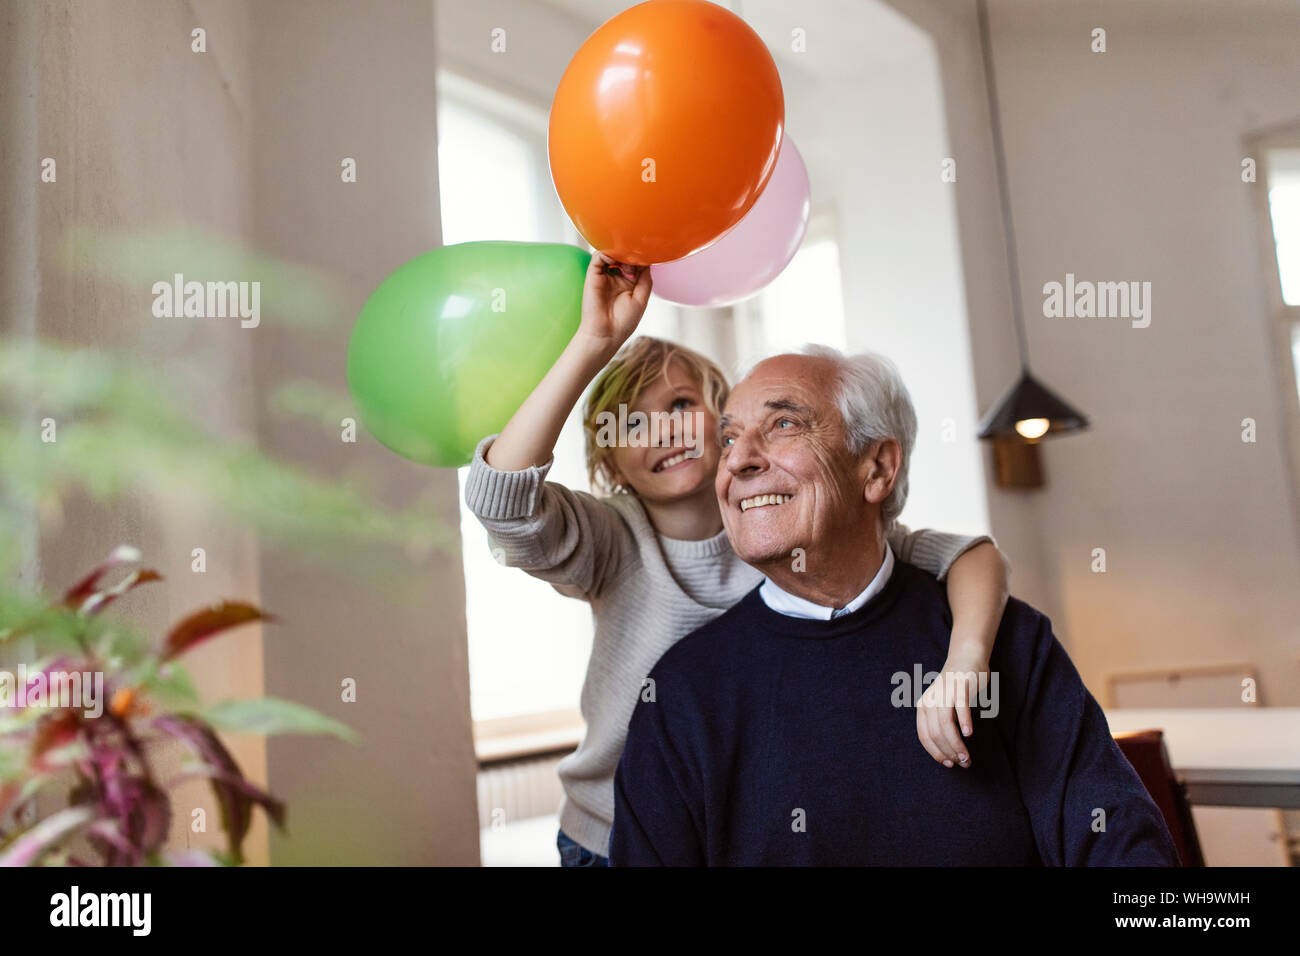 Heureux grand-père et petit-fils de jouer avec des ballons à la maison Banque D'Images